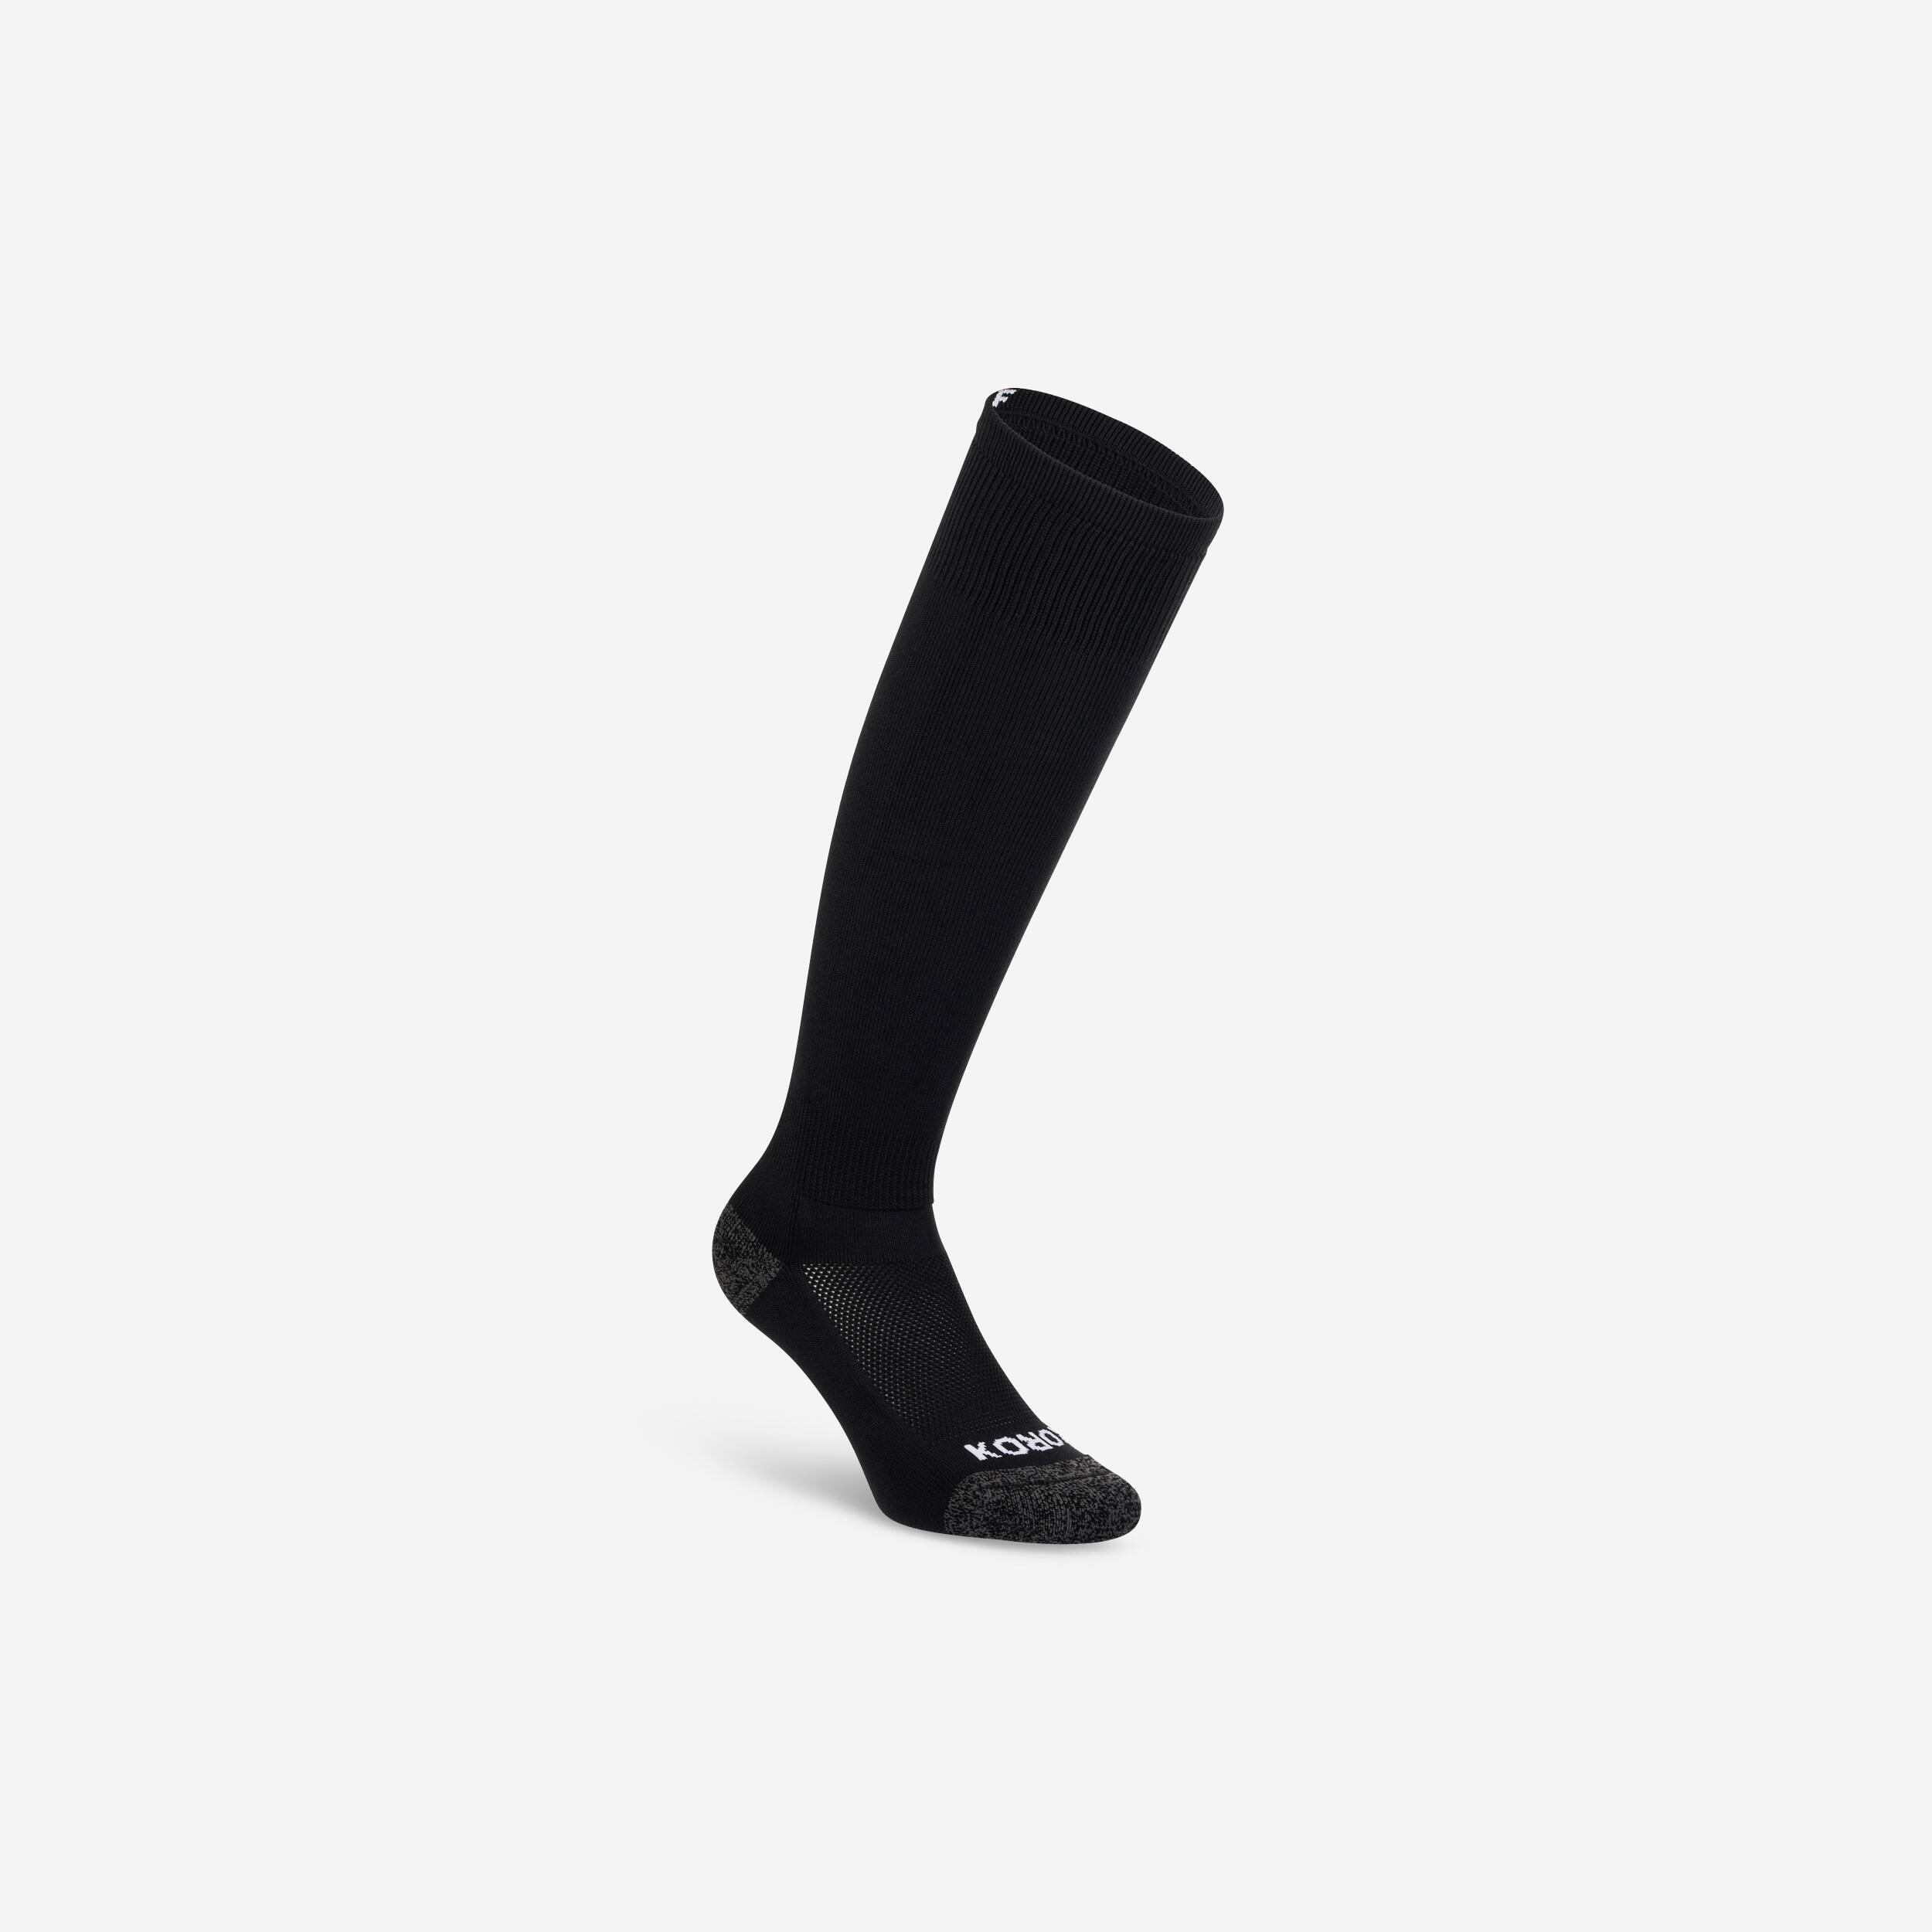 KOROK Adult Field Hockey Socks FH500 - Black